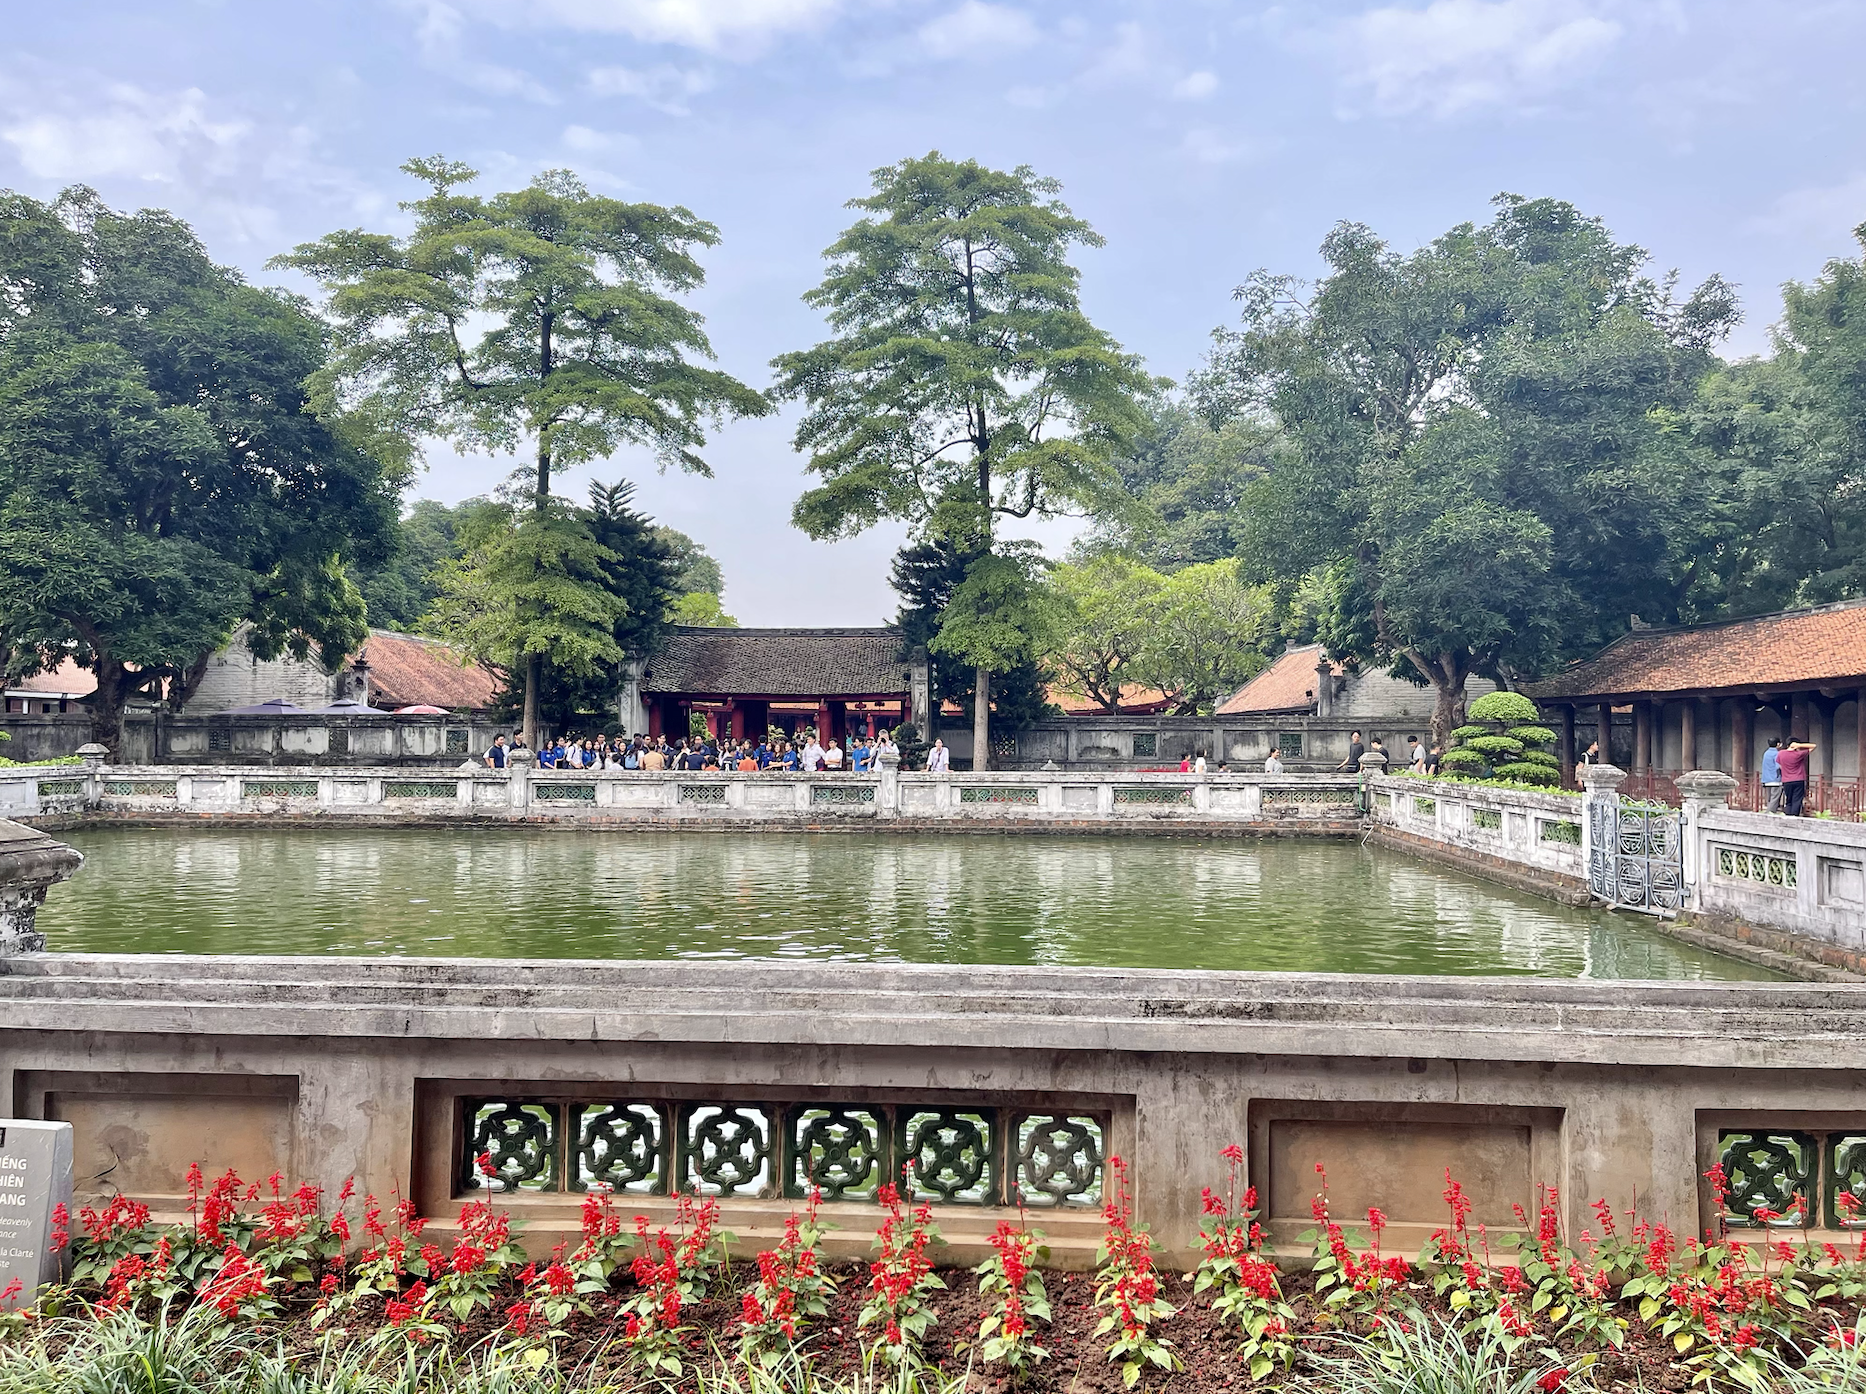 Temple Of Literature, Hanoi, Vietnam-10-day Vietnam itinerary